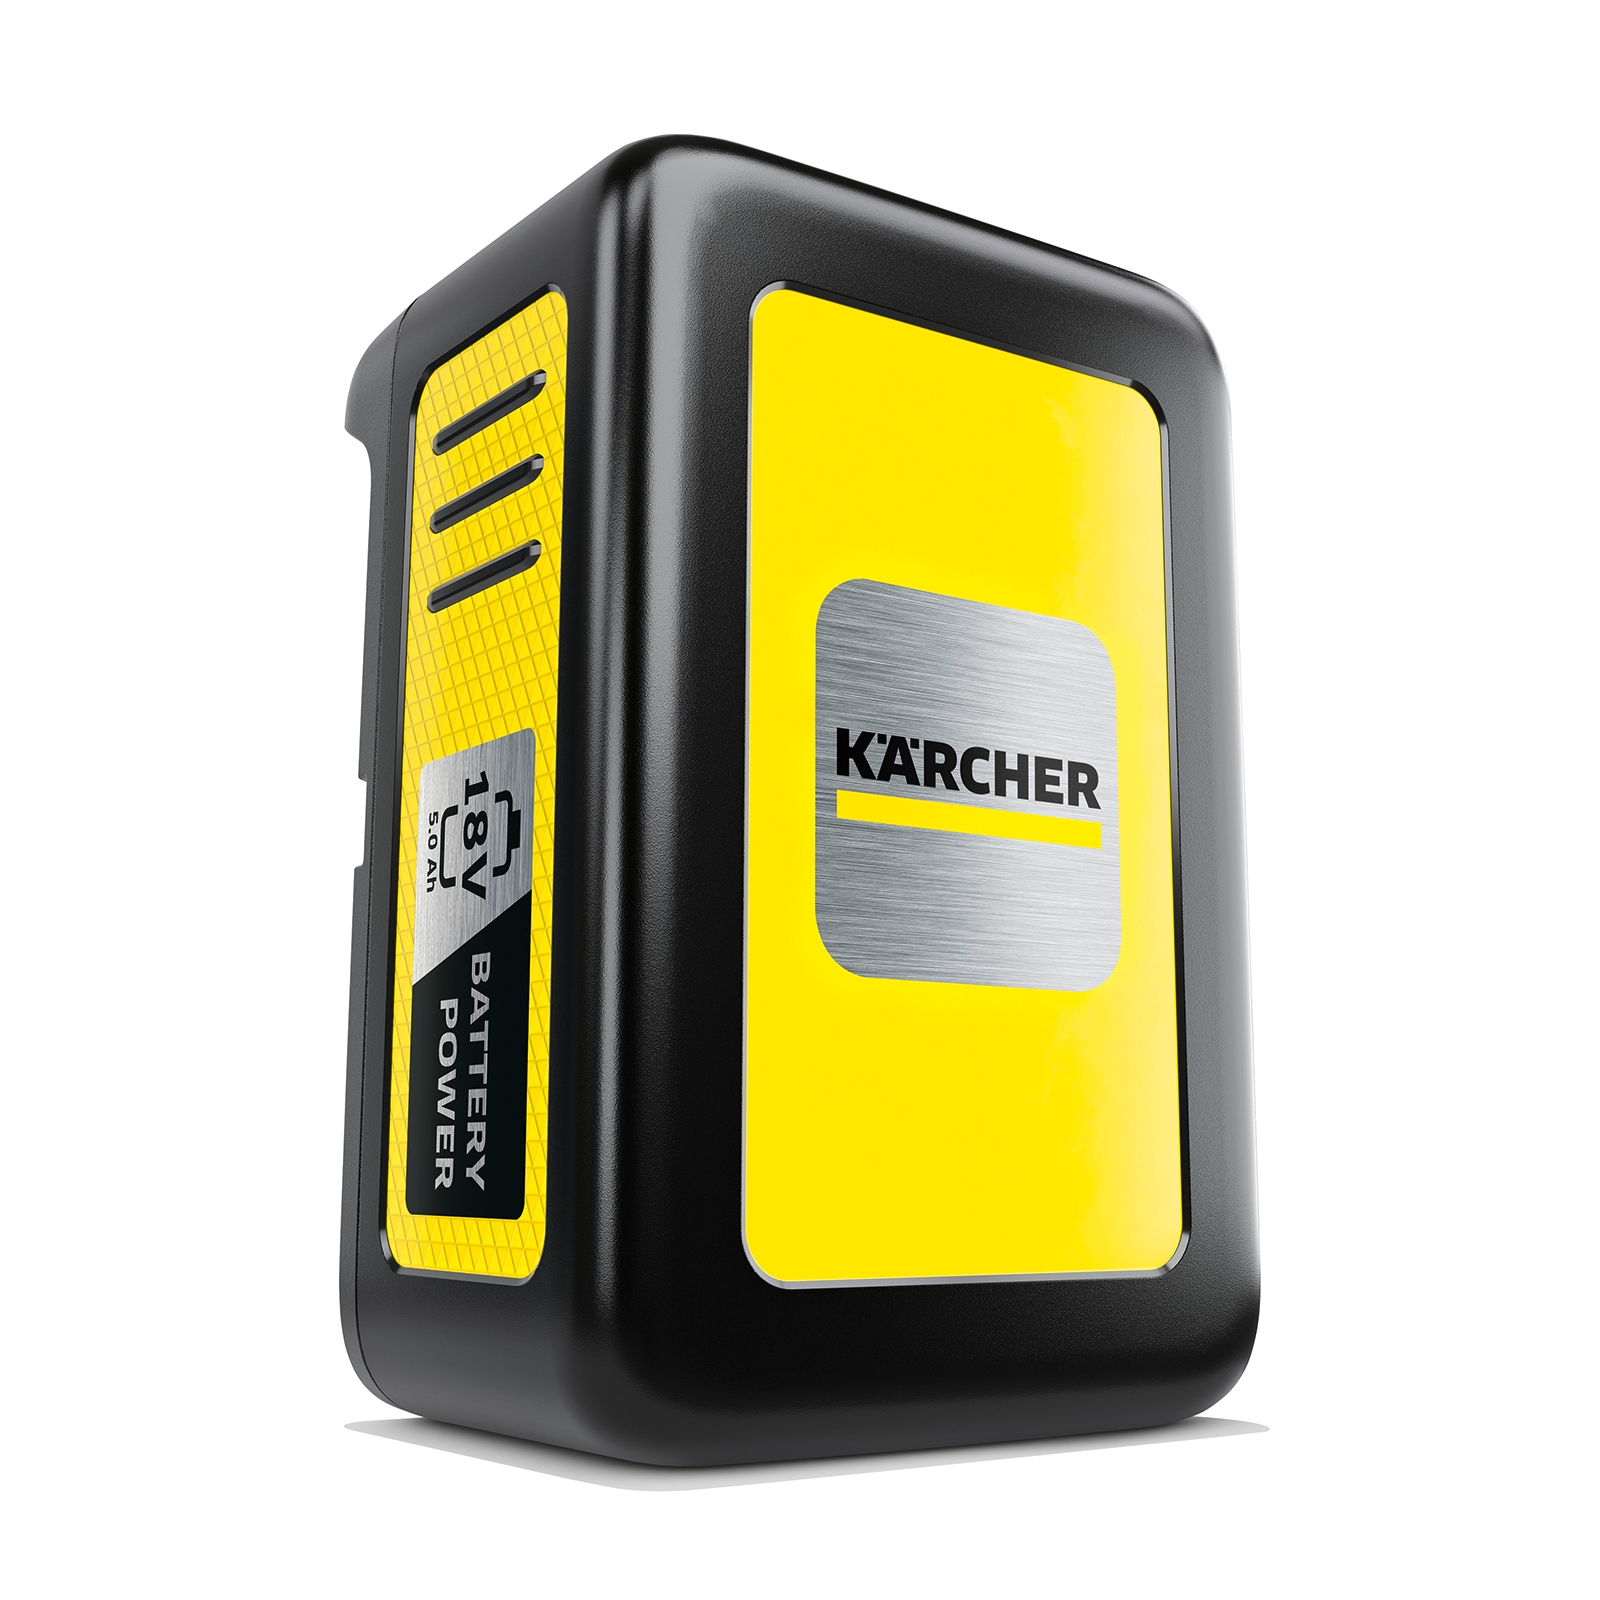 Karcher 18V / 5.0Ah Battery